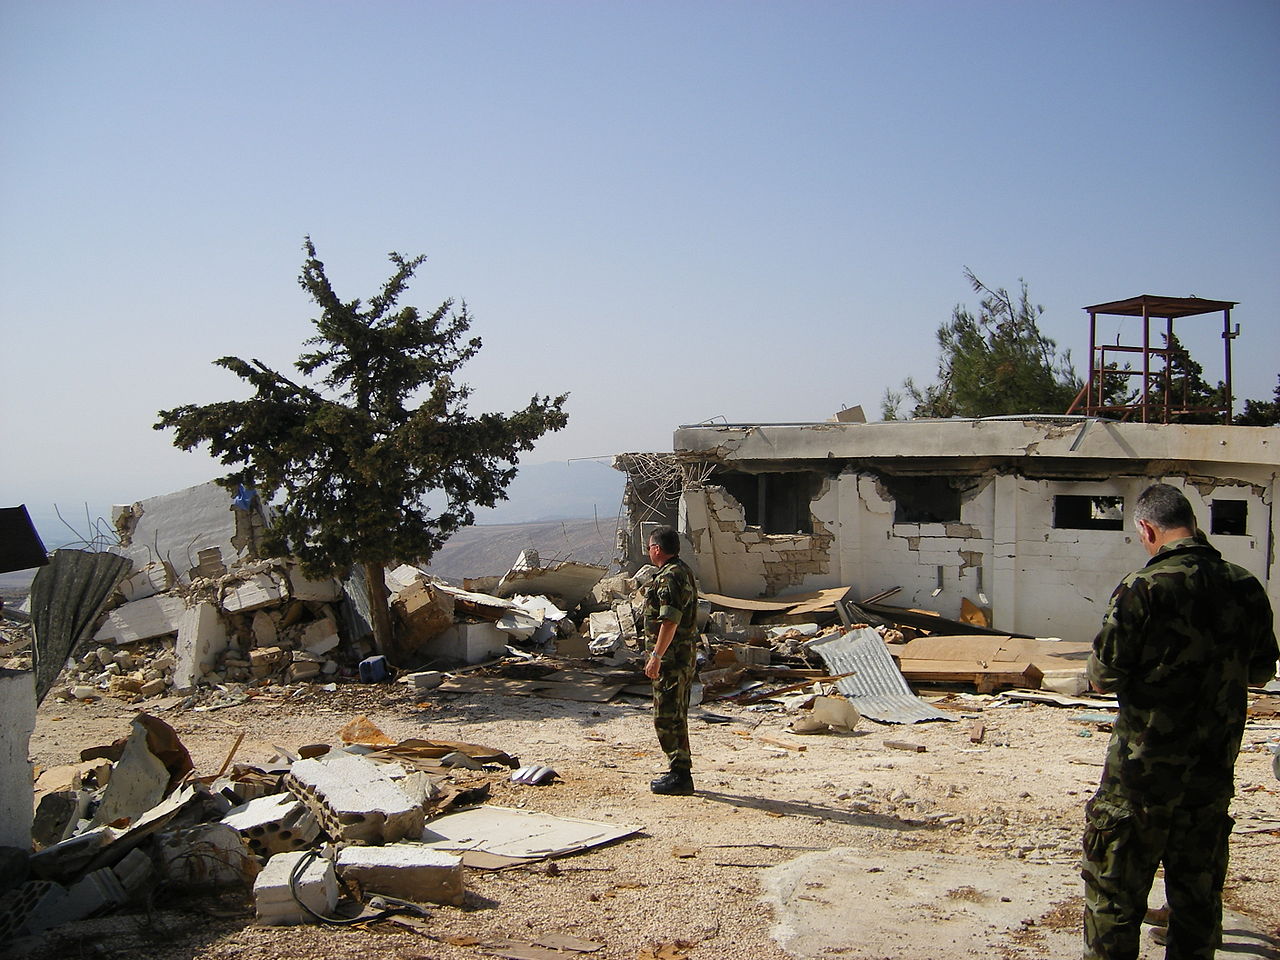 1280px-Destroyed_UN_base_in_Lebanon.jpg